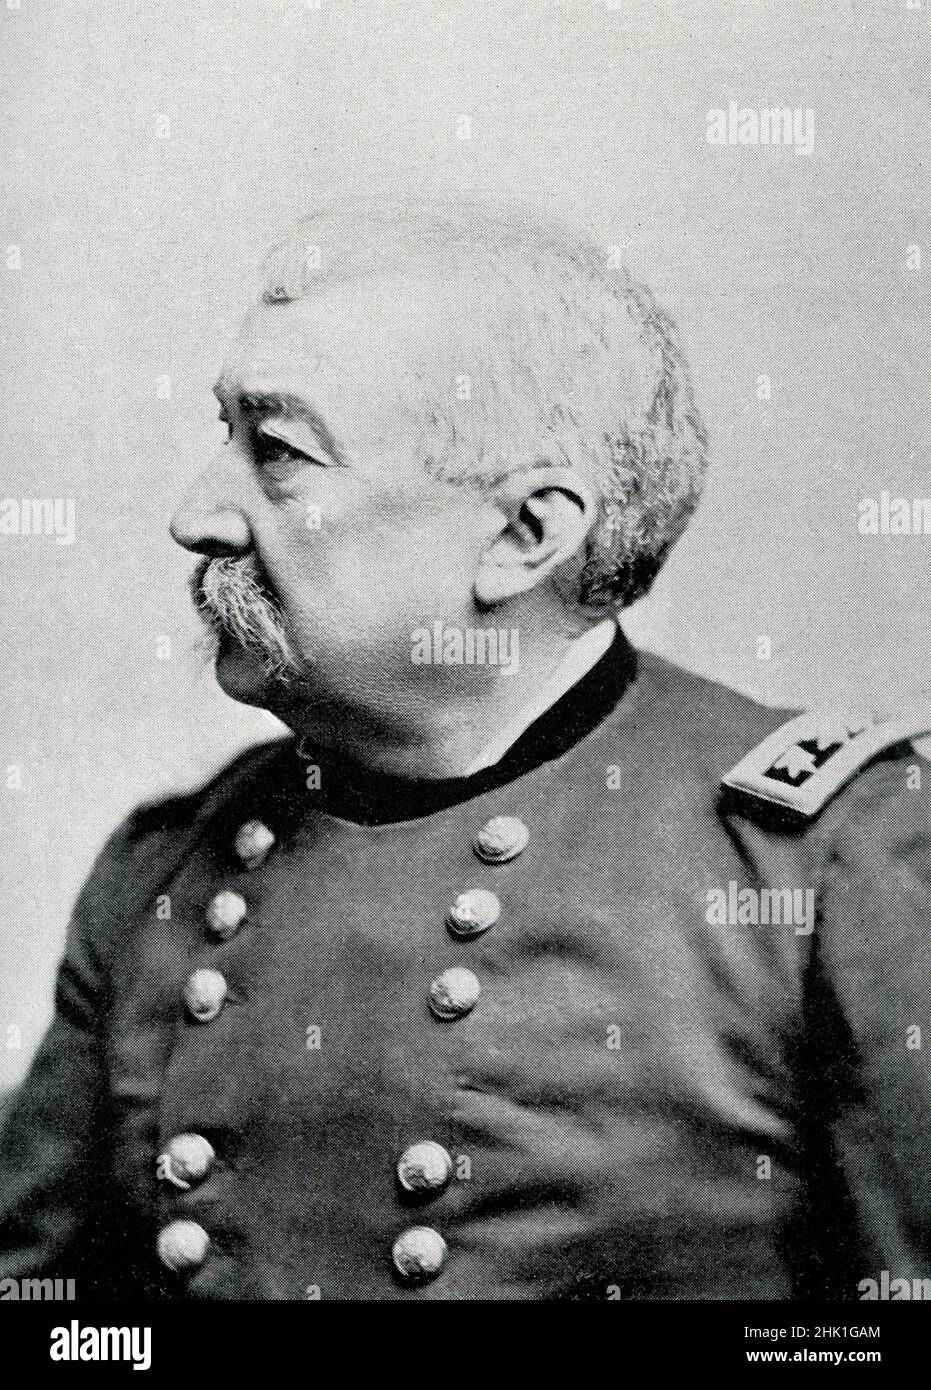 Philip Henry Sheridan, (1831-1888) était un officier de cavalerie américain très couronné de succès dont le leadership militaire au cours de la dernière année de la guerre civile américaine a joué un rôle déterminant dans la défaite de l'Armée confédérée.Il a été un officier de carrière de l'armée américaine et un général de l'Union dans la guerre civile américaine. Banque D'Images